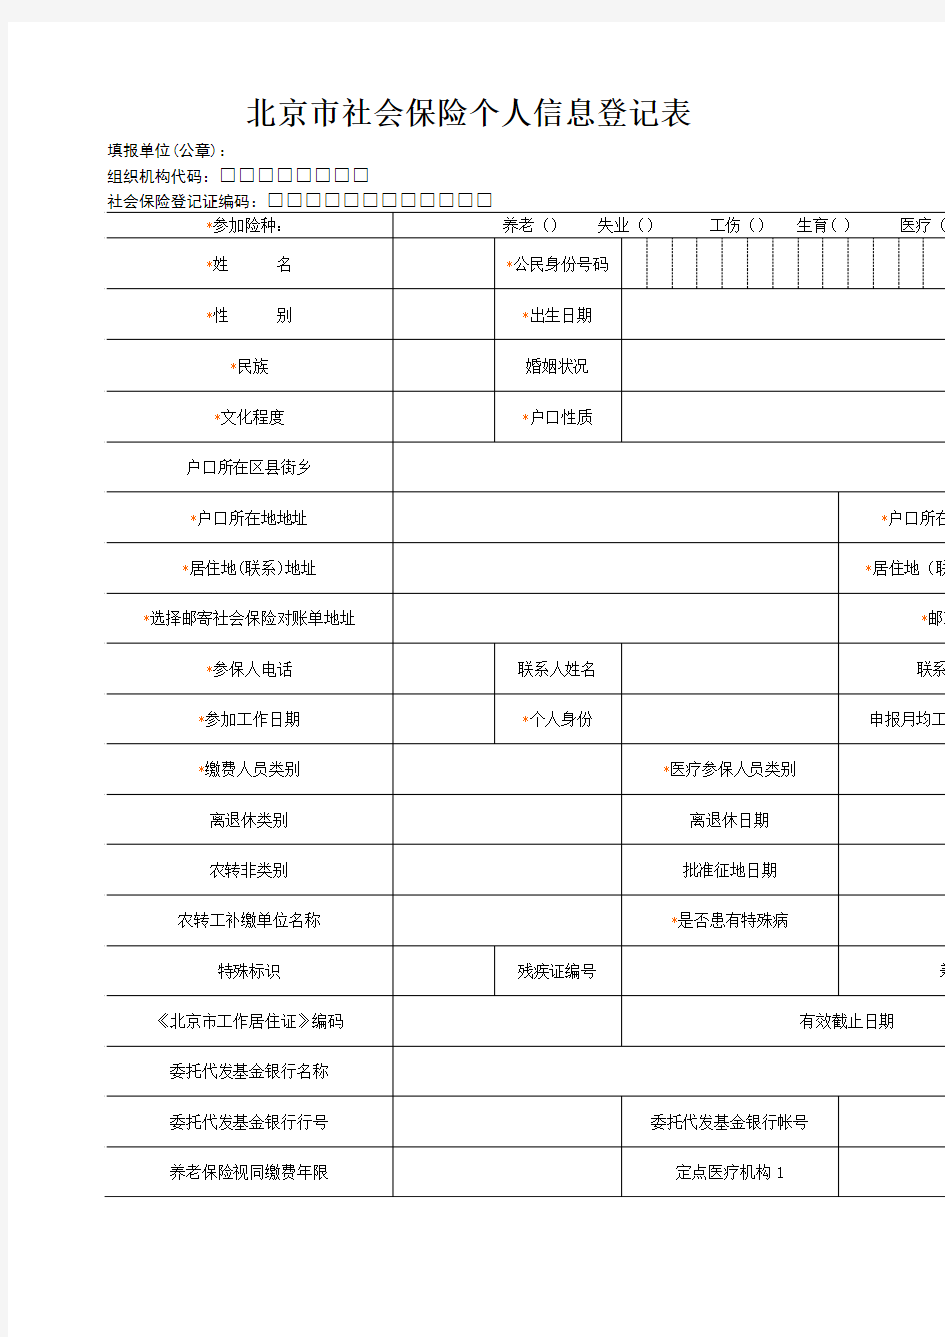 北京市社会保险个人信息登记表 含说明 